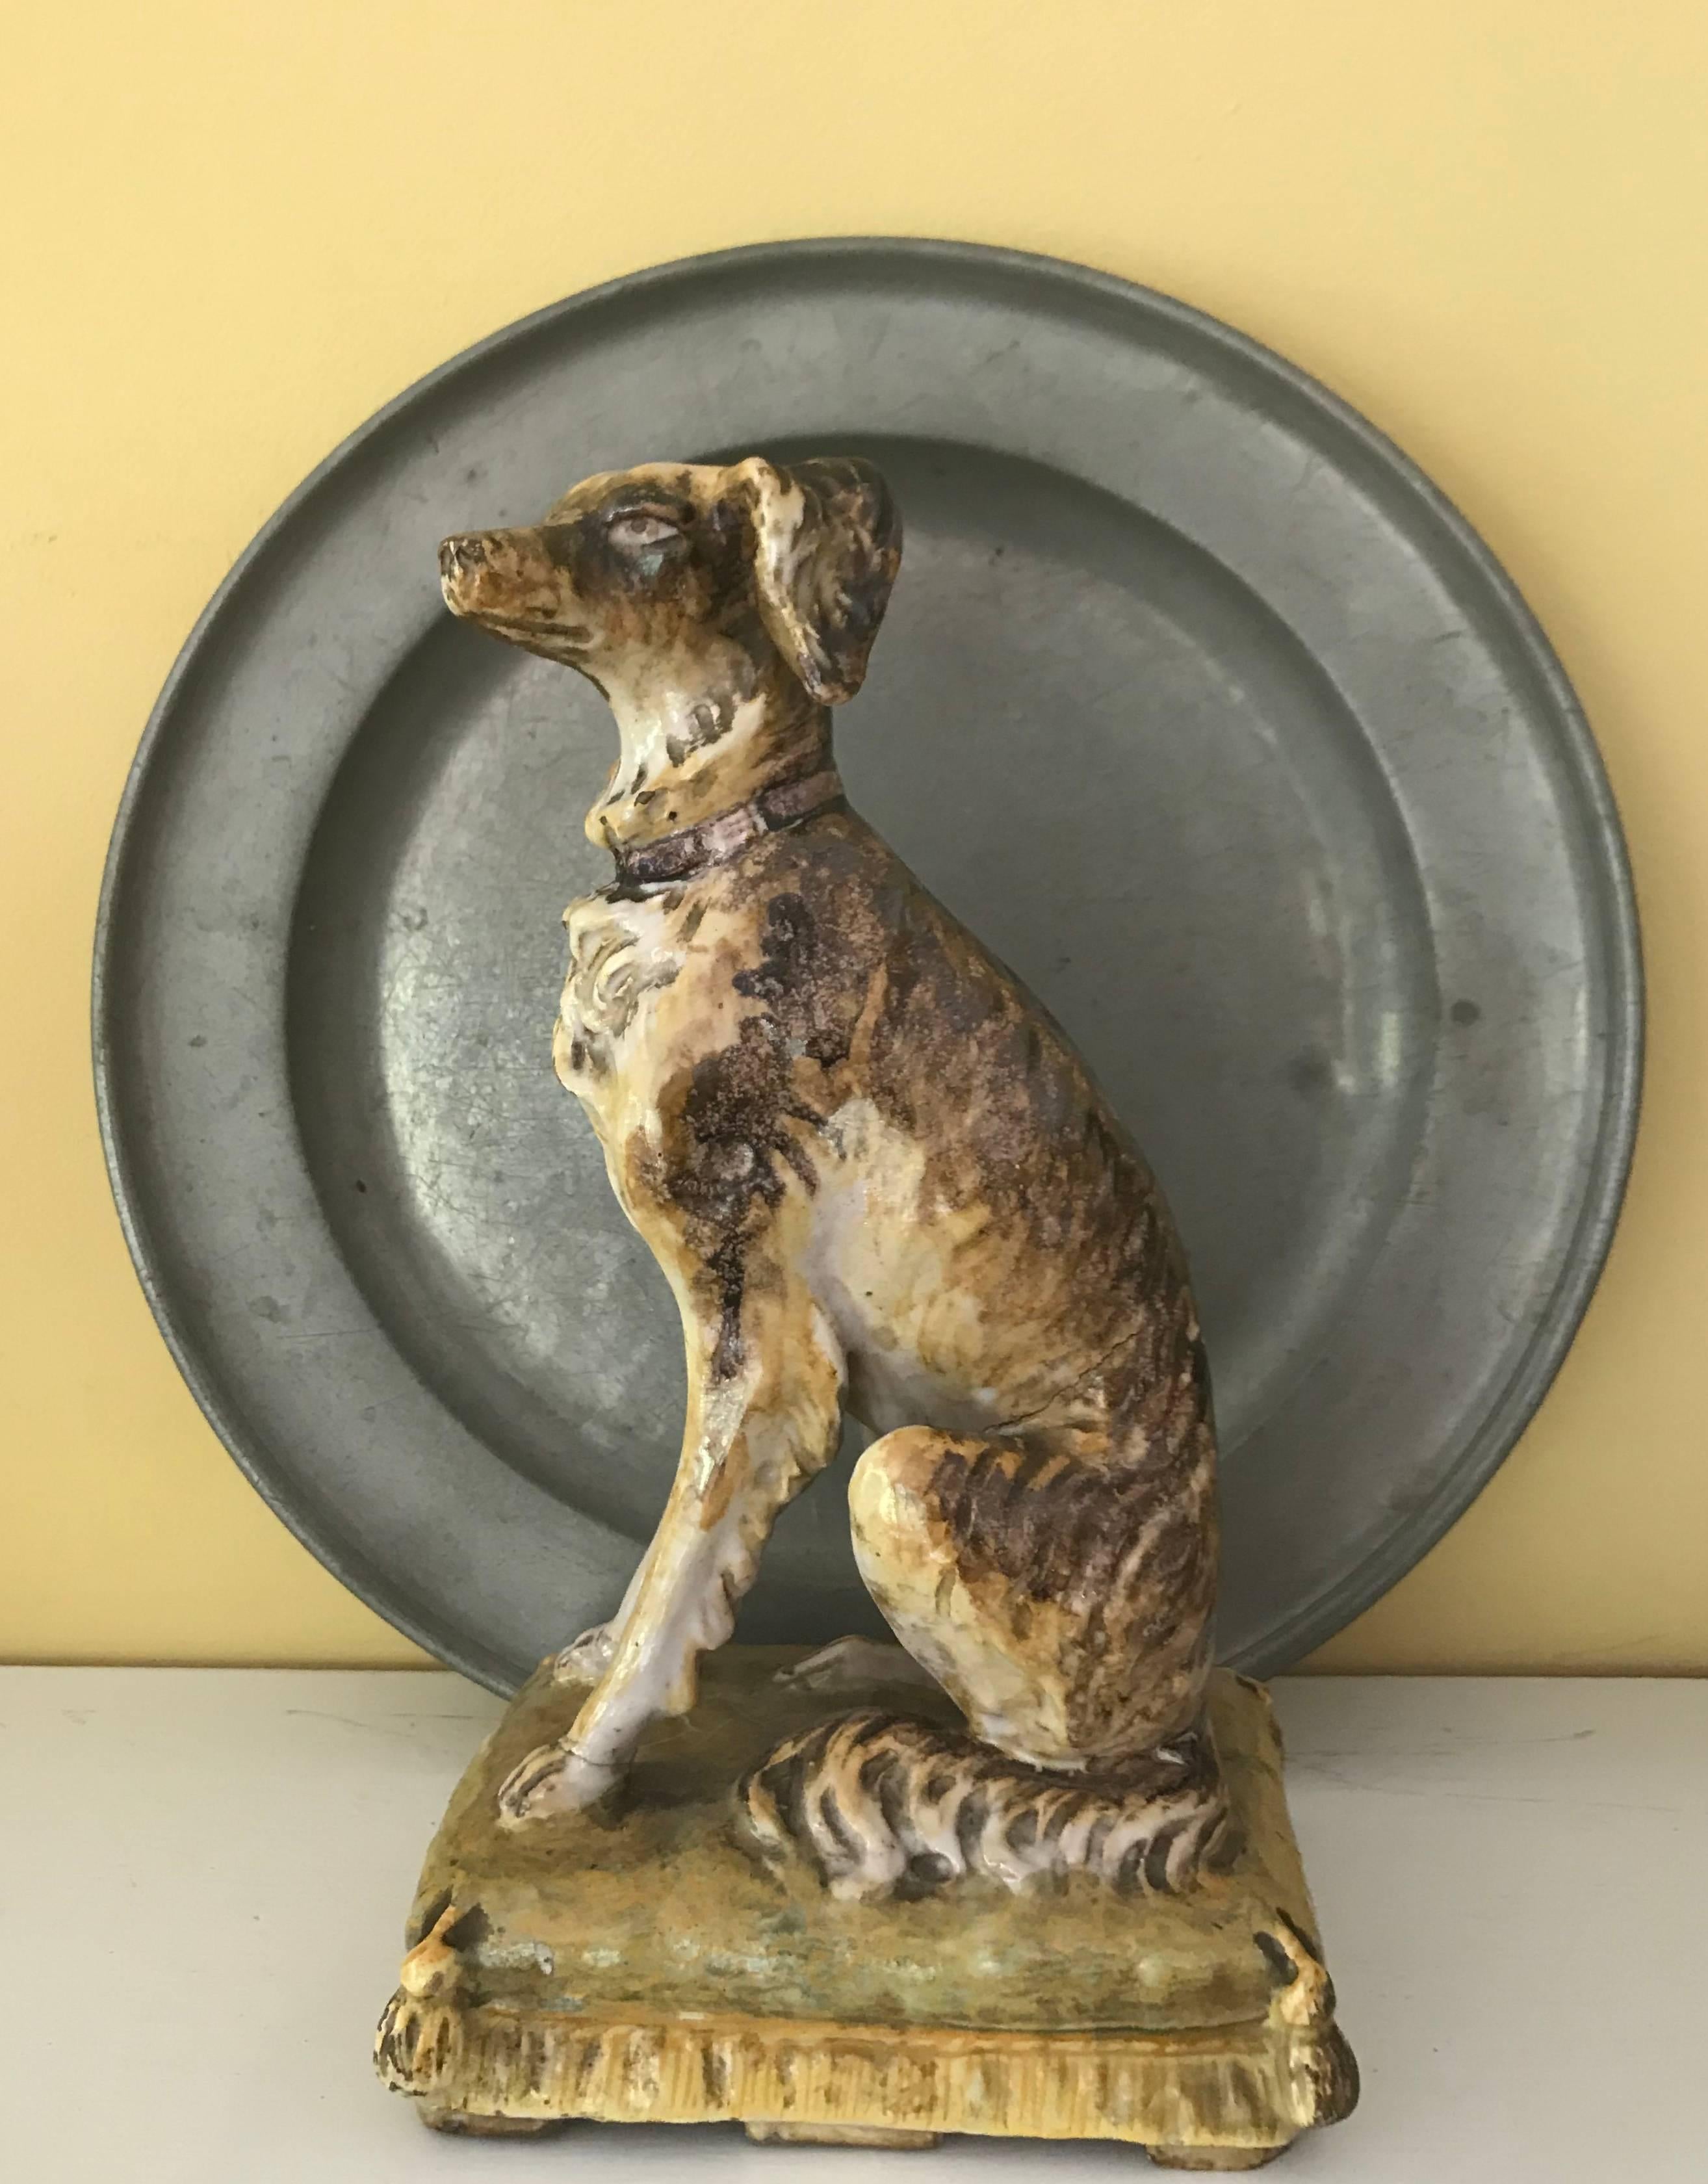 Sculpture de chien italien. Figurine italienne de chien de chasse à poil long magnifiquement modelée et doucement colorée, assise sur un coussin de sol jaune, Italie, milieu du XIXe siècle.
Dimensions : 4